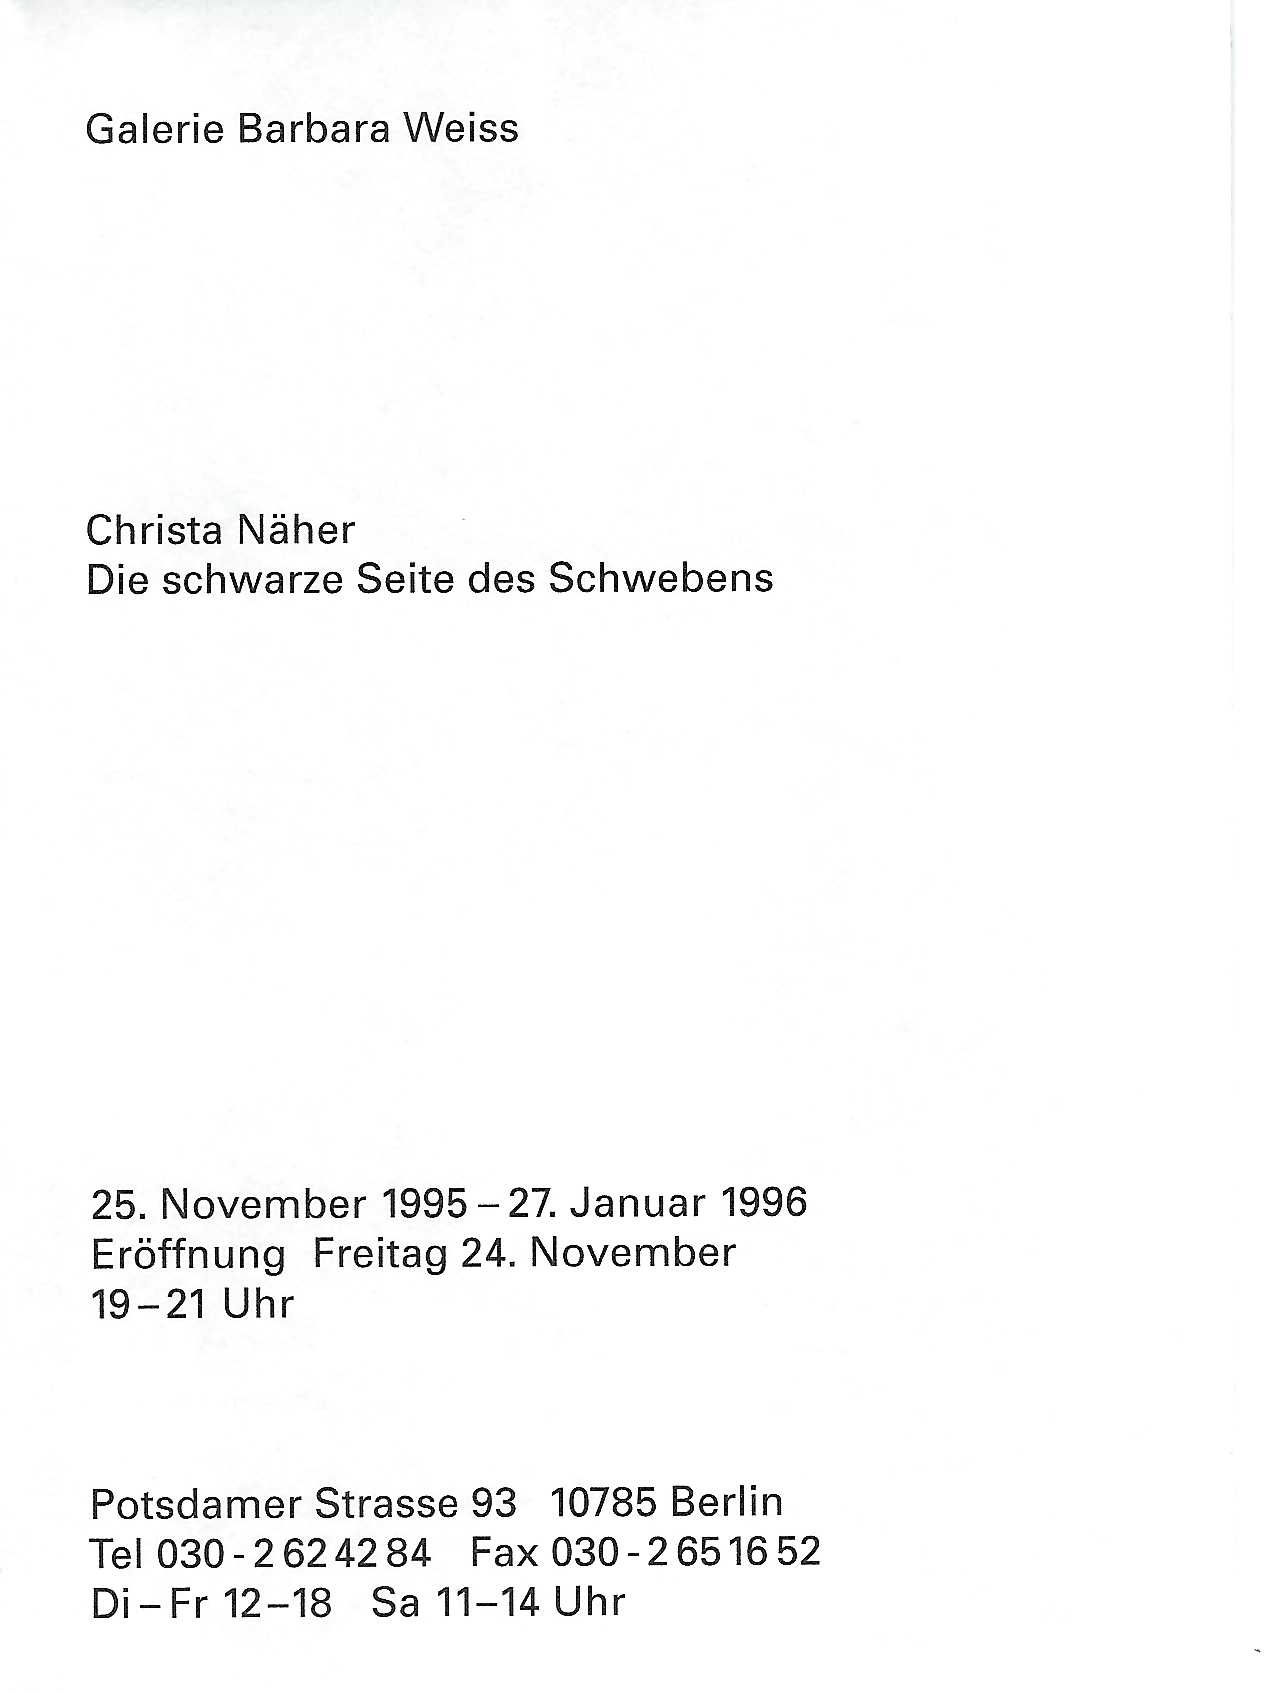 Christa Näher: Die schwarze Seite des Schwebens. November 25, 1995 – January 27, 1996